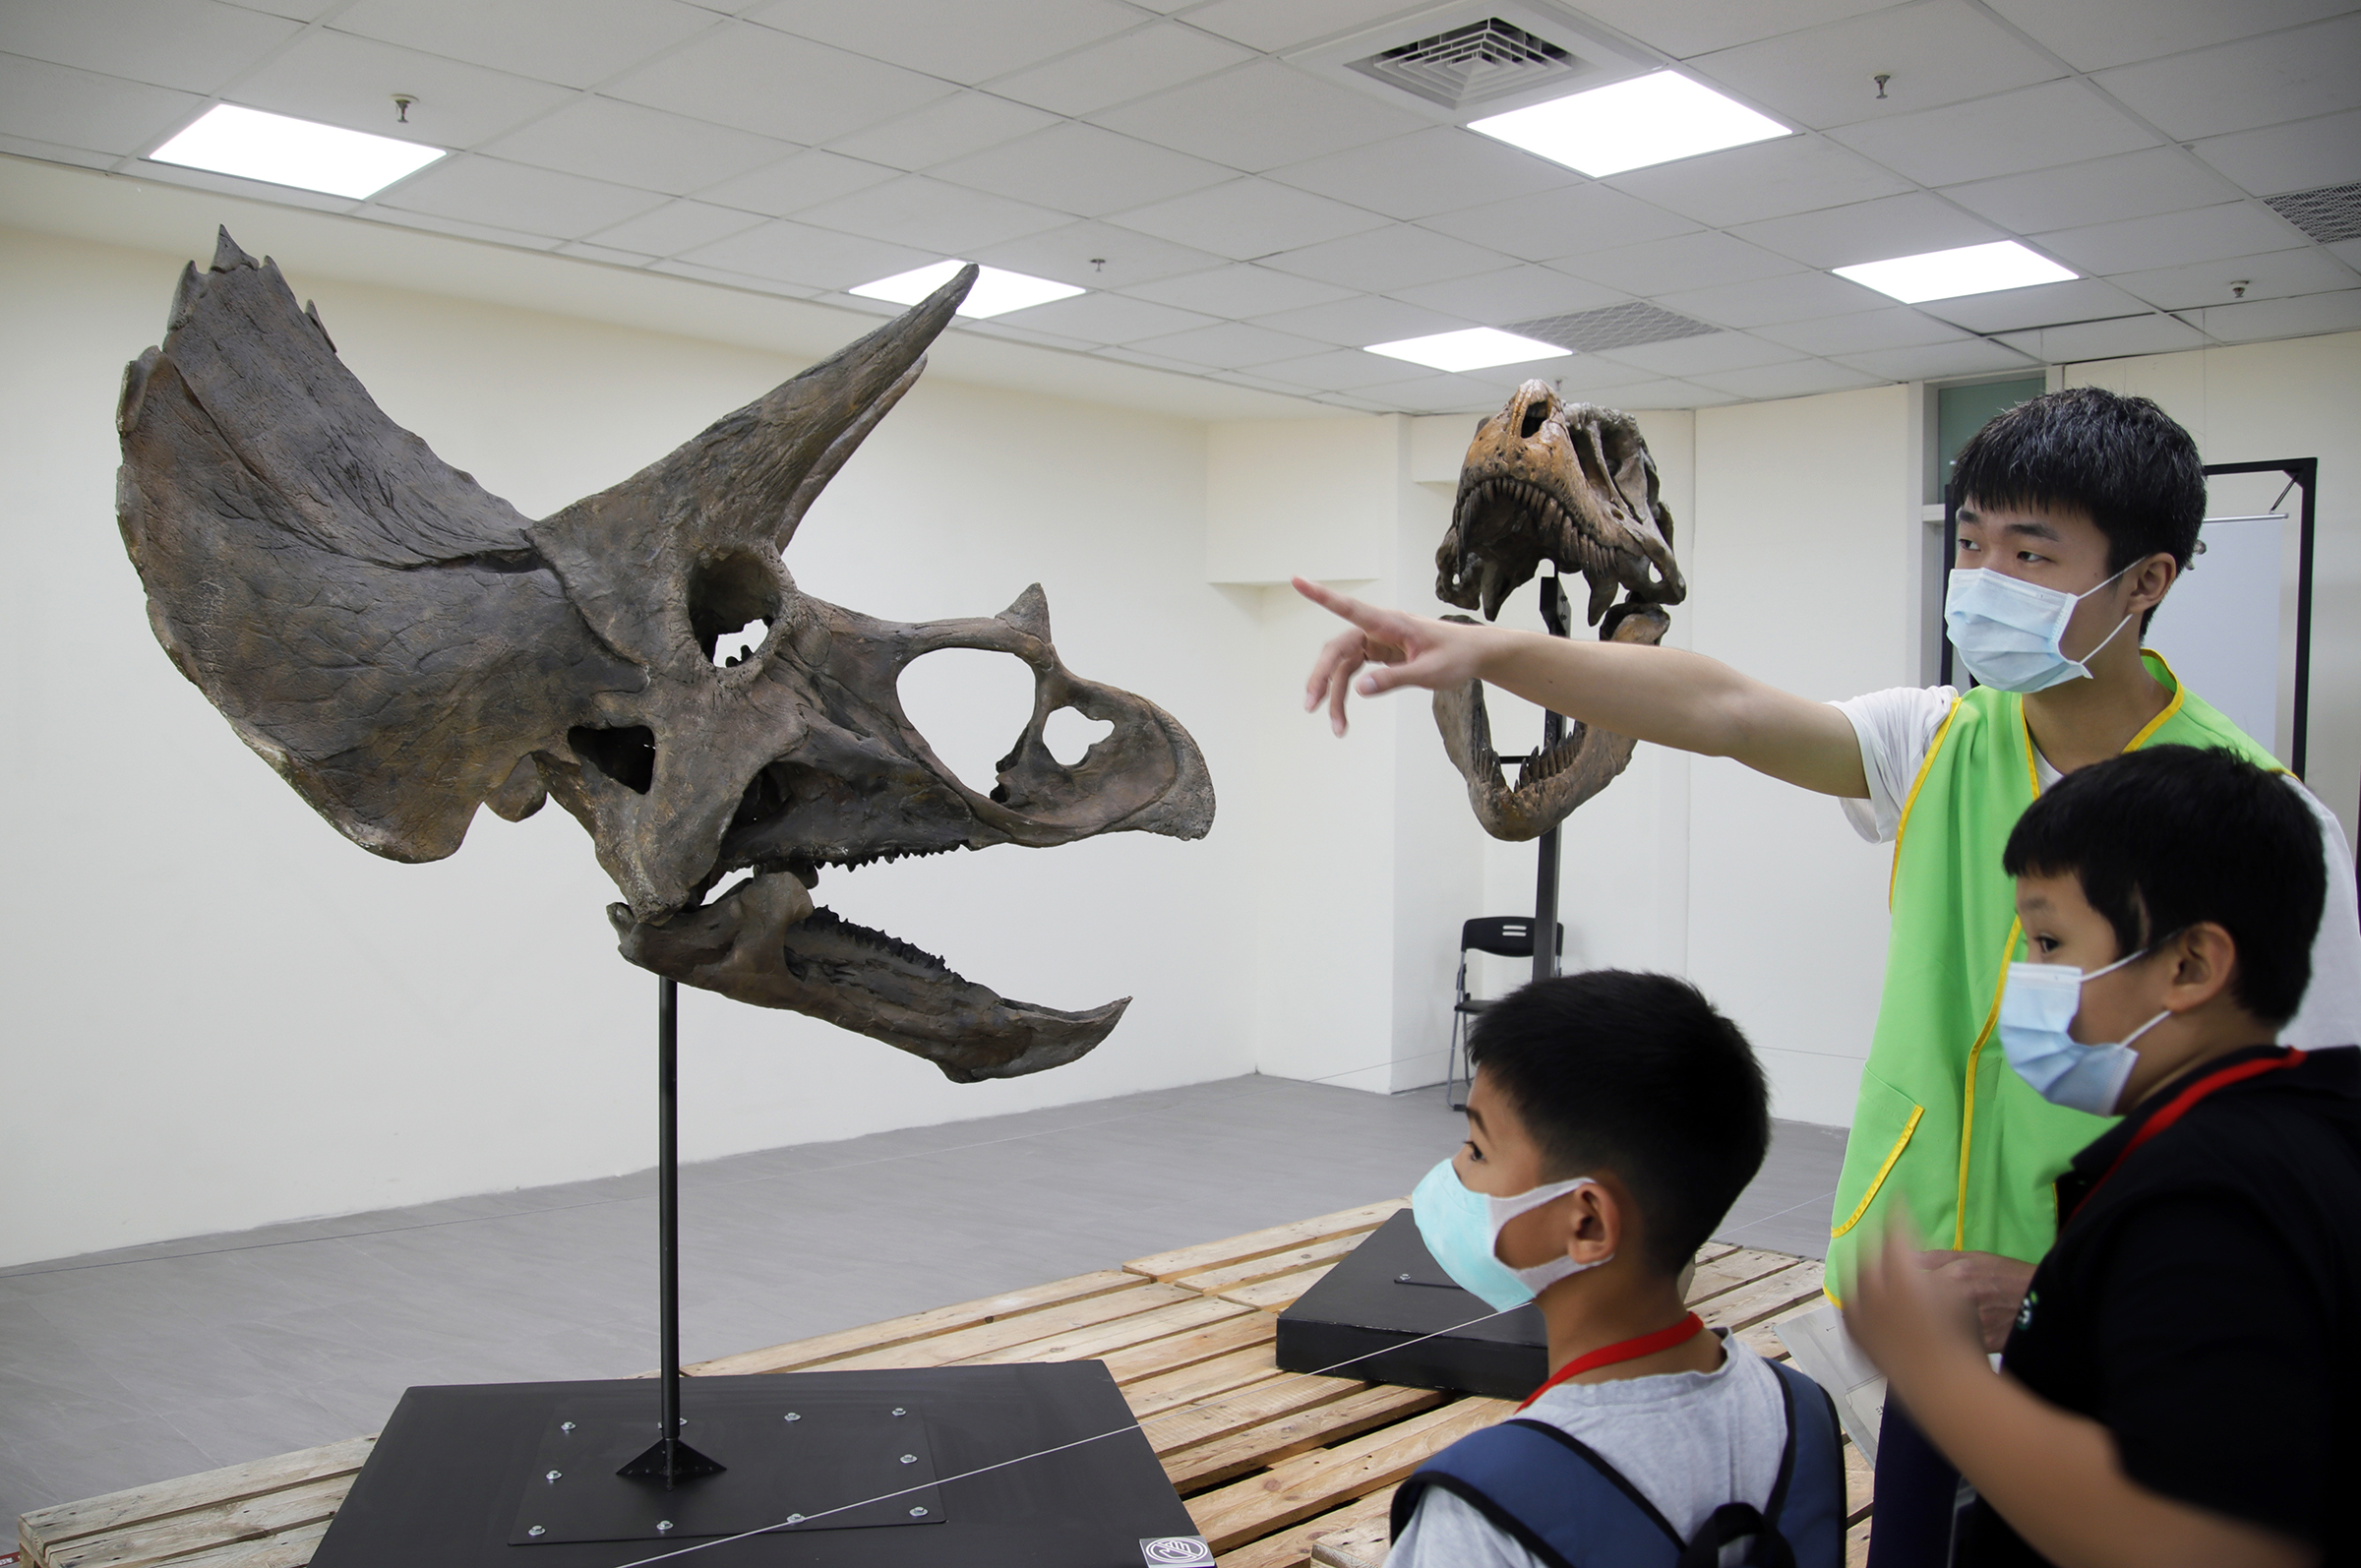 桃園天文嘉年華「恐龍與彗星展」在中央大學展出，吸引許多大小朋友前往參觀，還有大學生幫忙解說。陳如枝攝